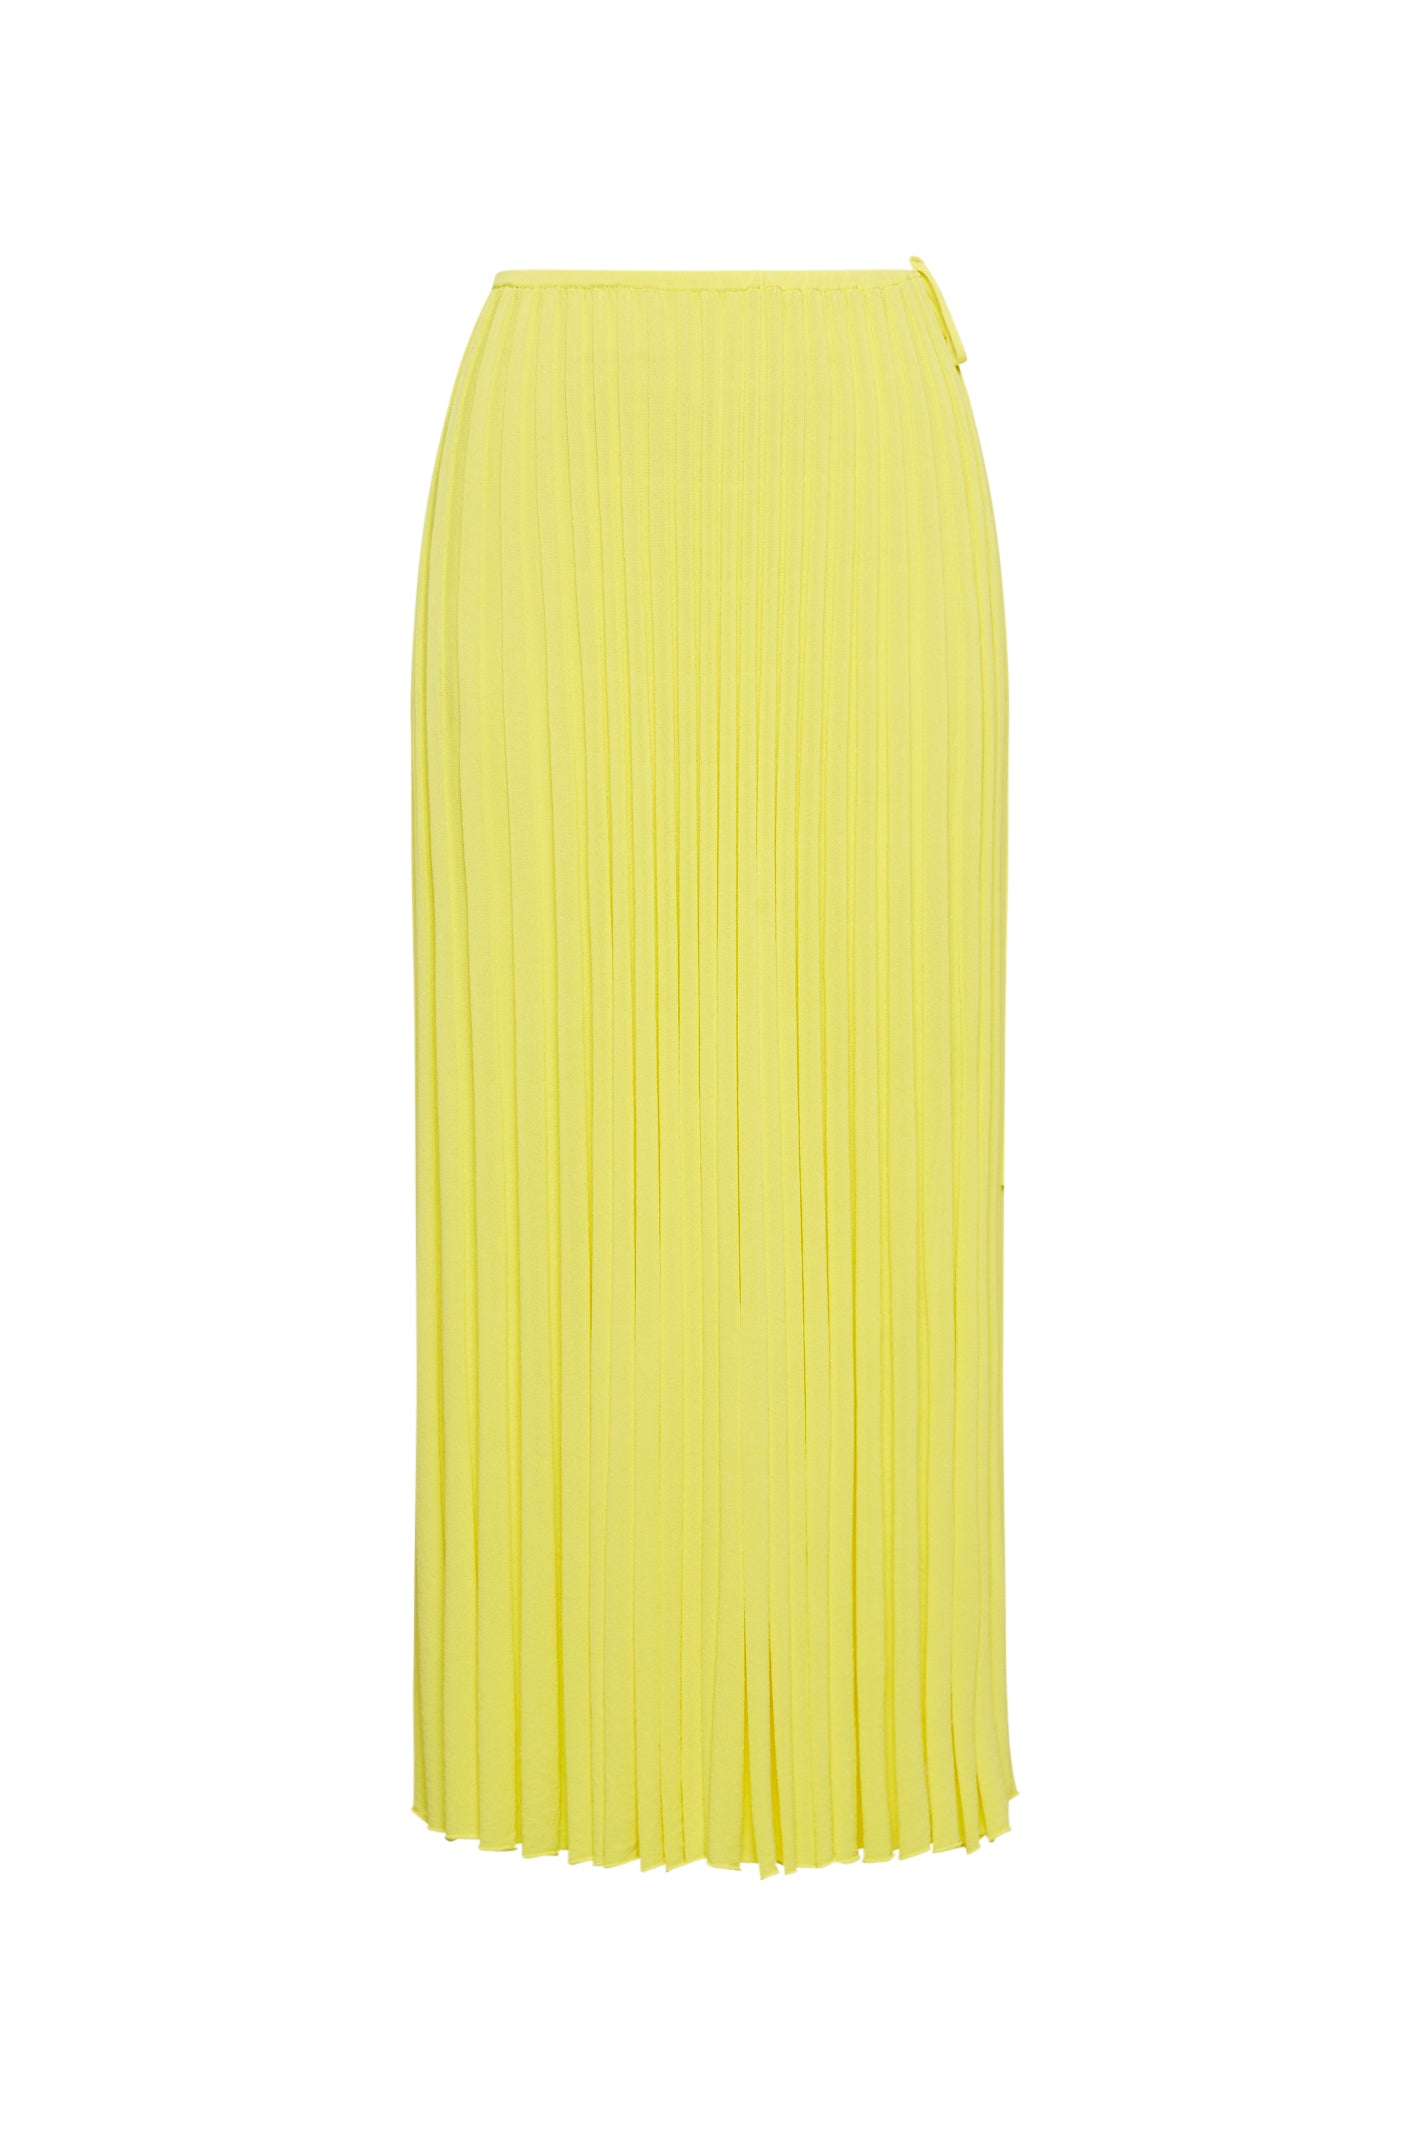 Pleated Rib Skirt 16 Yellow Scanlan Theodore 